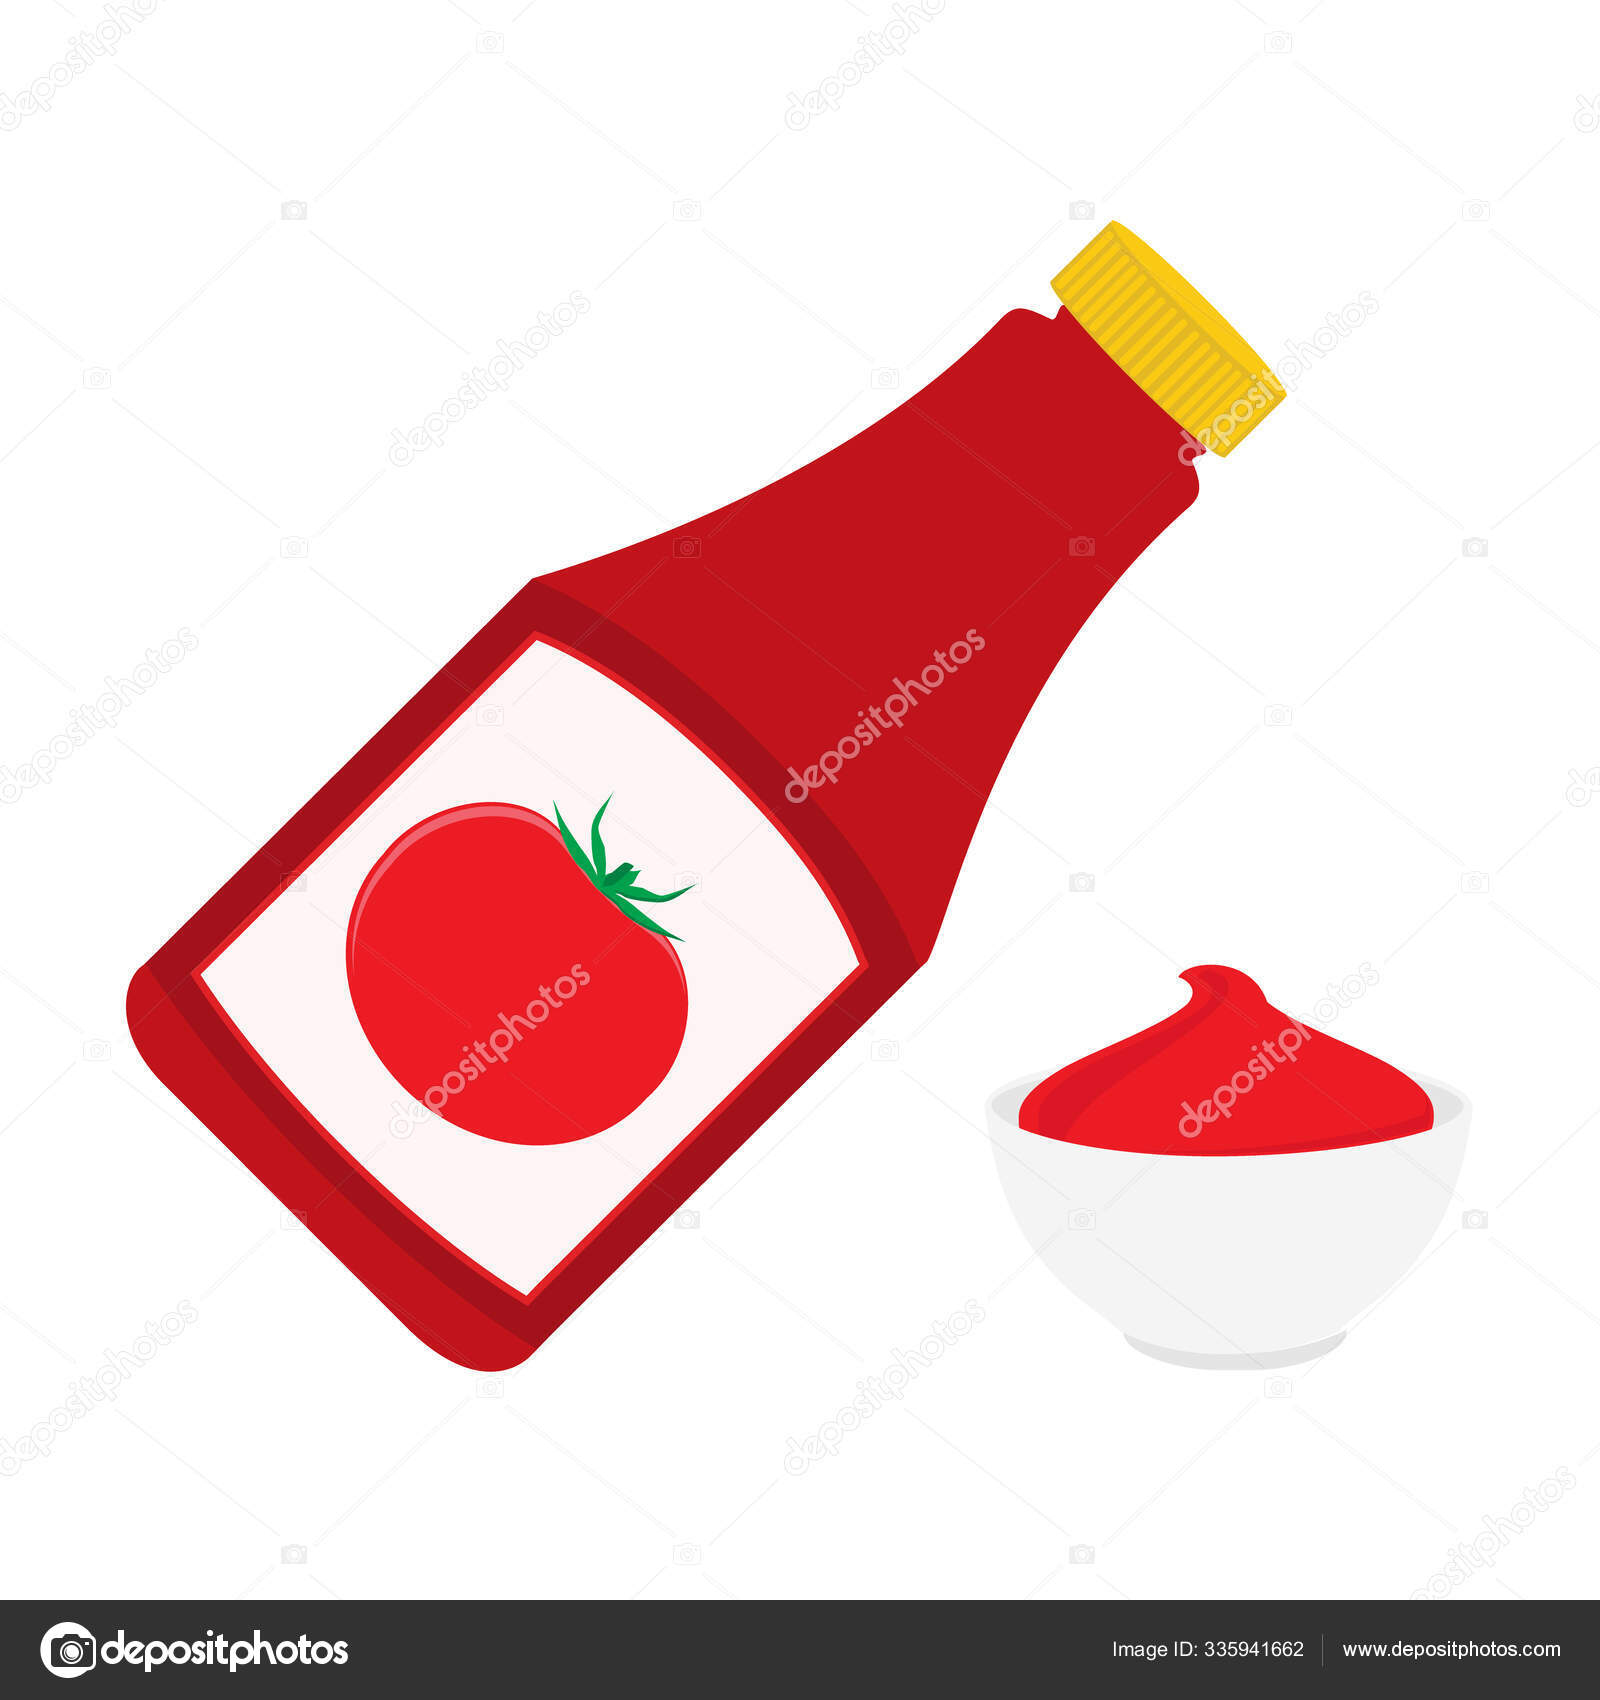 Tomato ketchup label design Stock Photos, Royalty Free Tomato ketchup label  design Images | Depositphotos